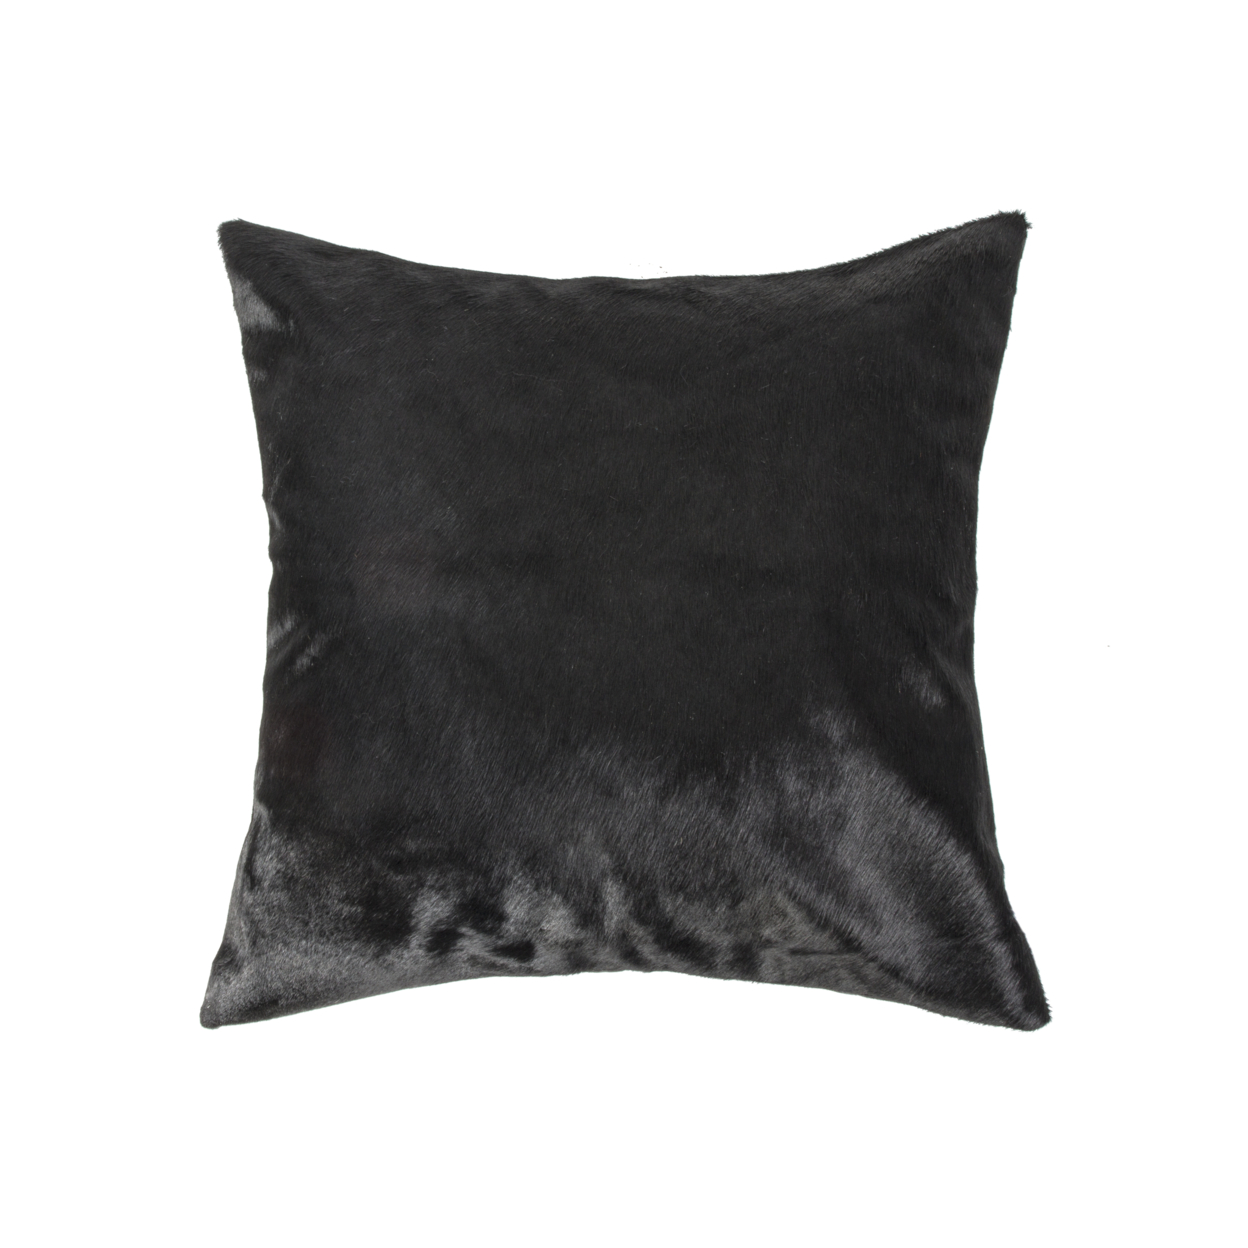 Torino Cowhide Pillow 18"x18" Black